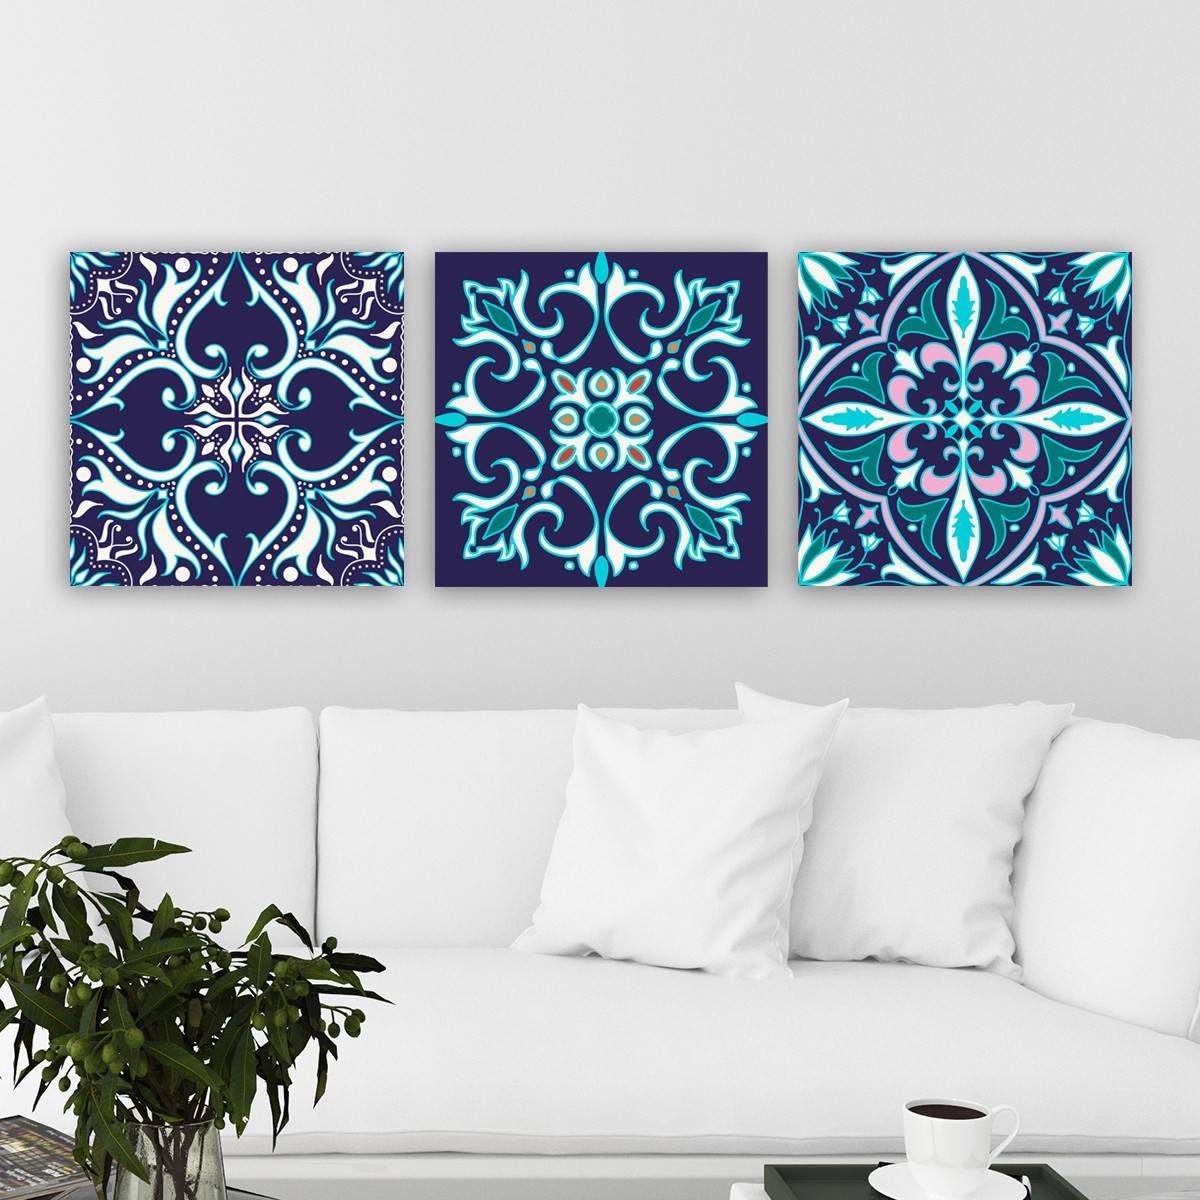 Conjunto de 3 cuadros decorativos con motivos arabescos cuatrifolios Scaenicos Lienzo de madera Azul Turquesa Verde